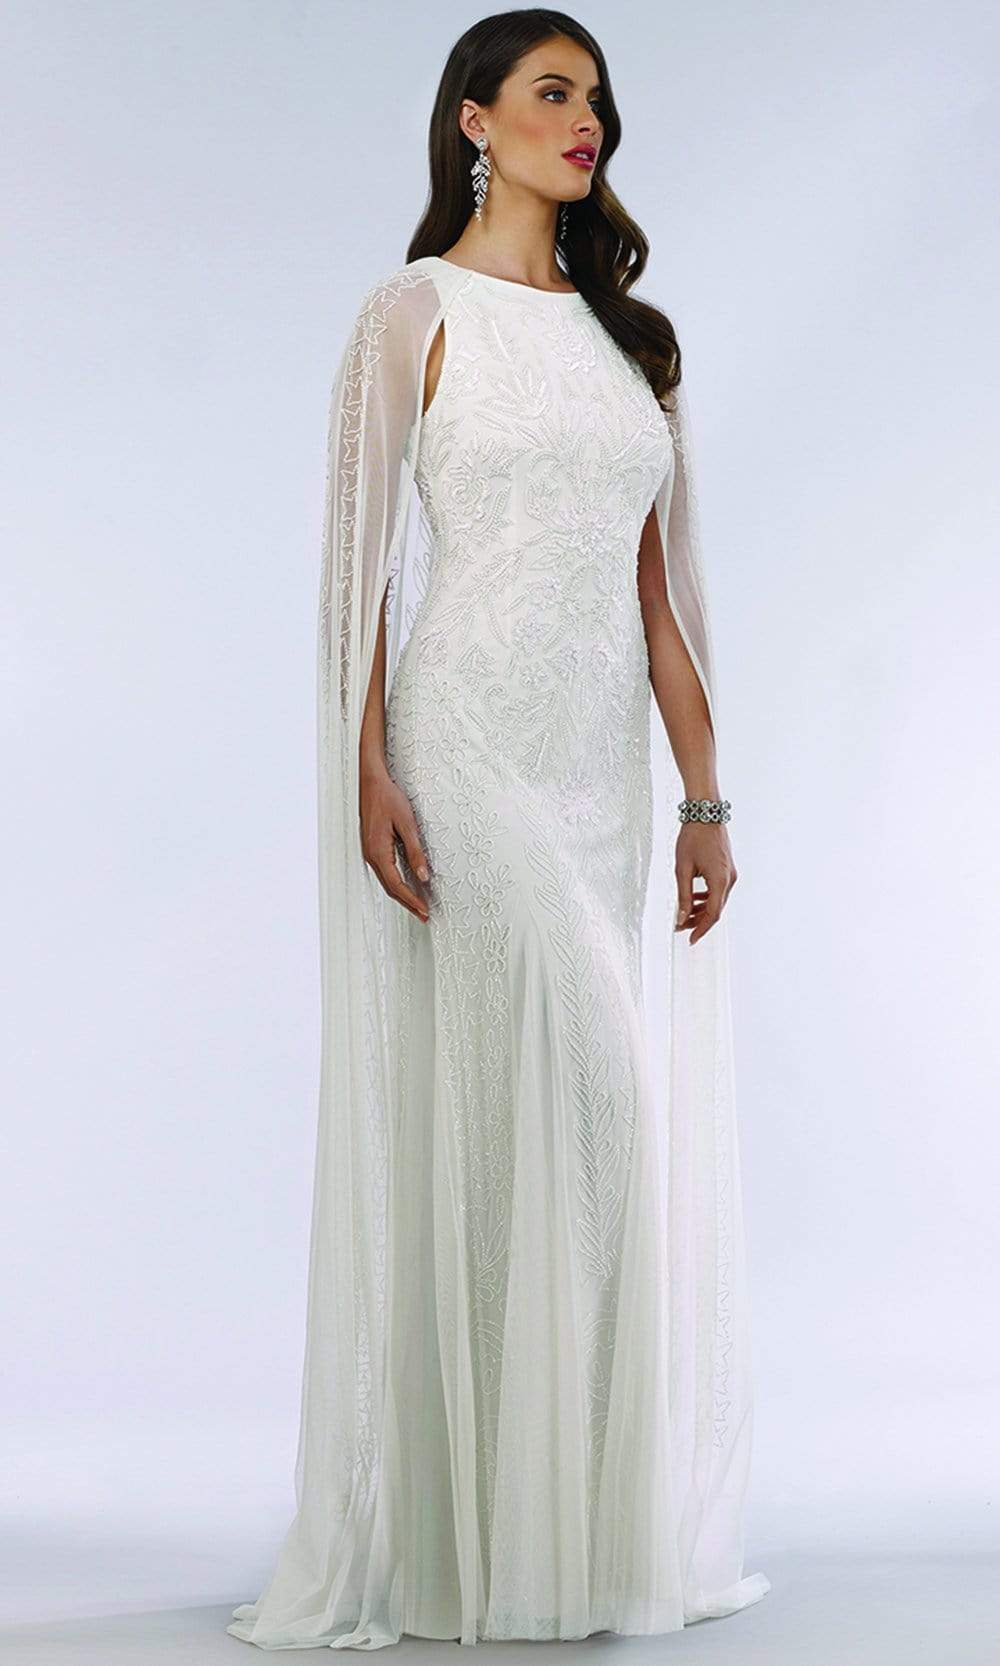 Image of Lara Dresses - 51045 Caped Sleeveless Beaded Lace Bridal Dress